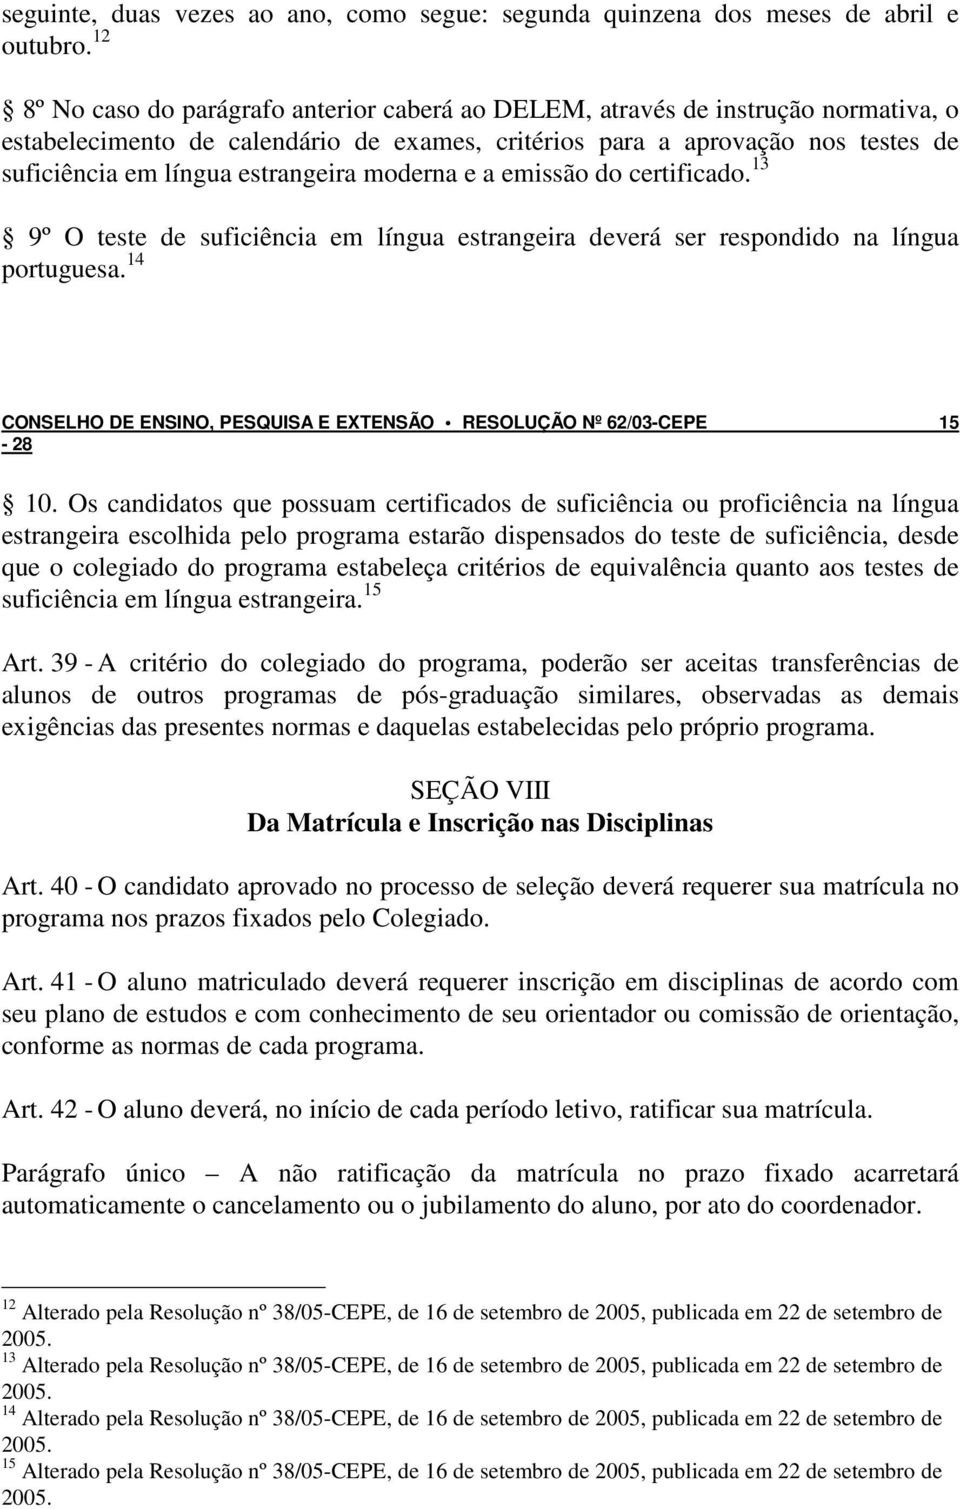 estrangeira moderna e a emissão do certificado. 13 9º O teste de suficiência em língua estrangeira deverá ser respondido na língua portuguesa.